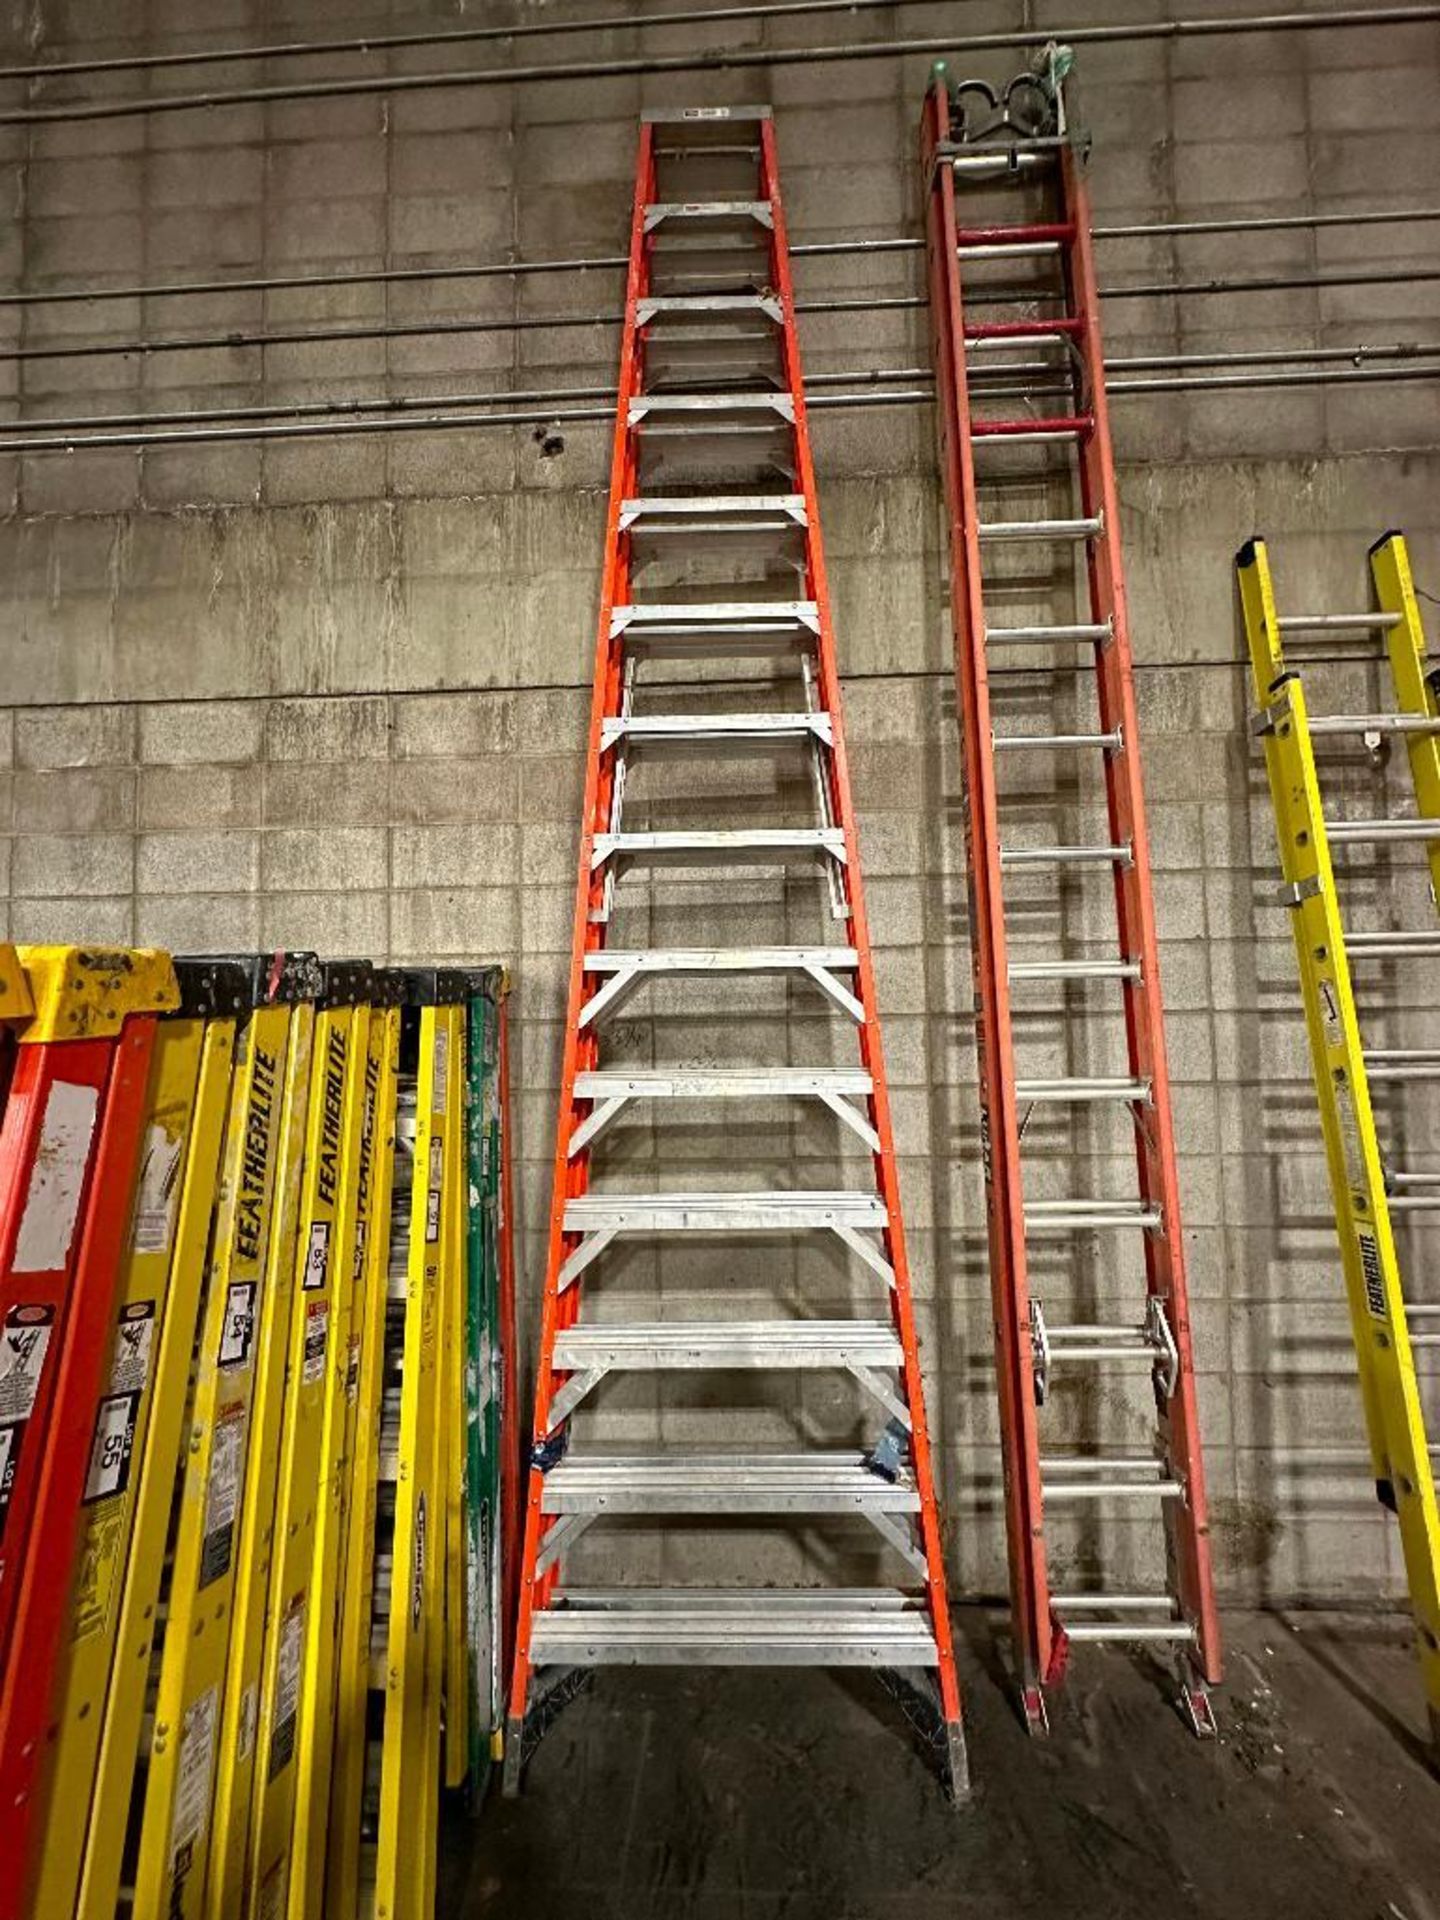 Werner 14' Fiberglass Step Ladder - Image 5 of 6